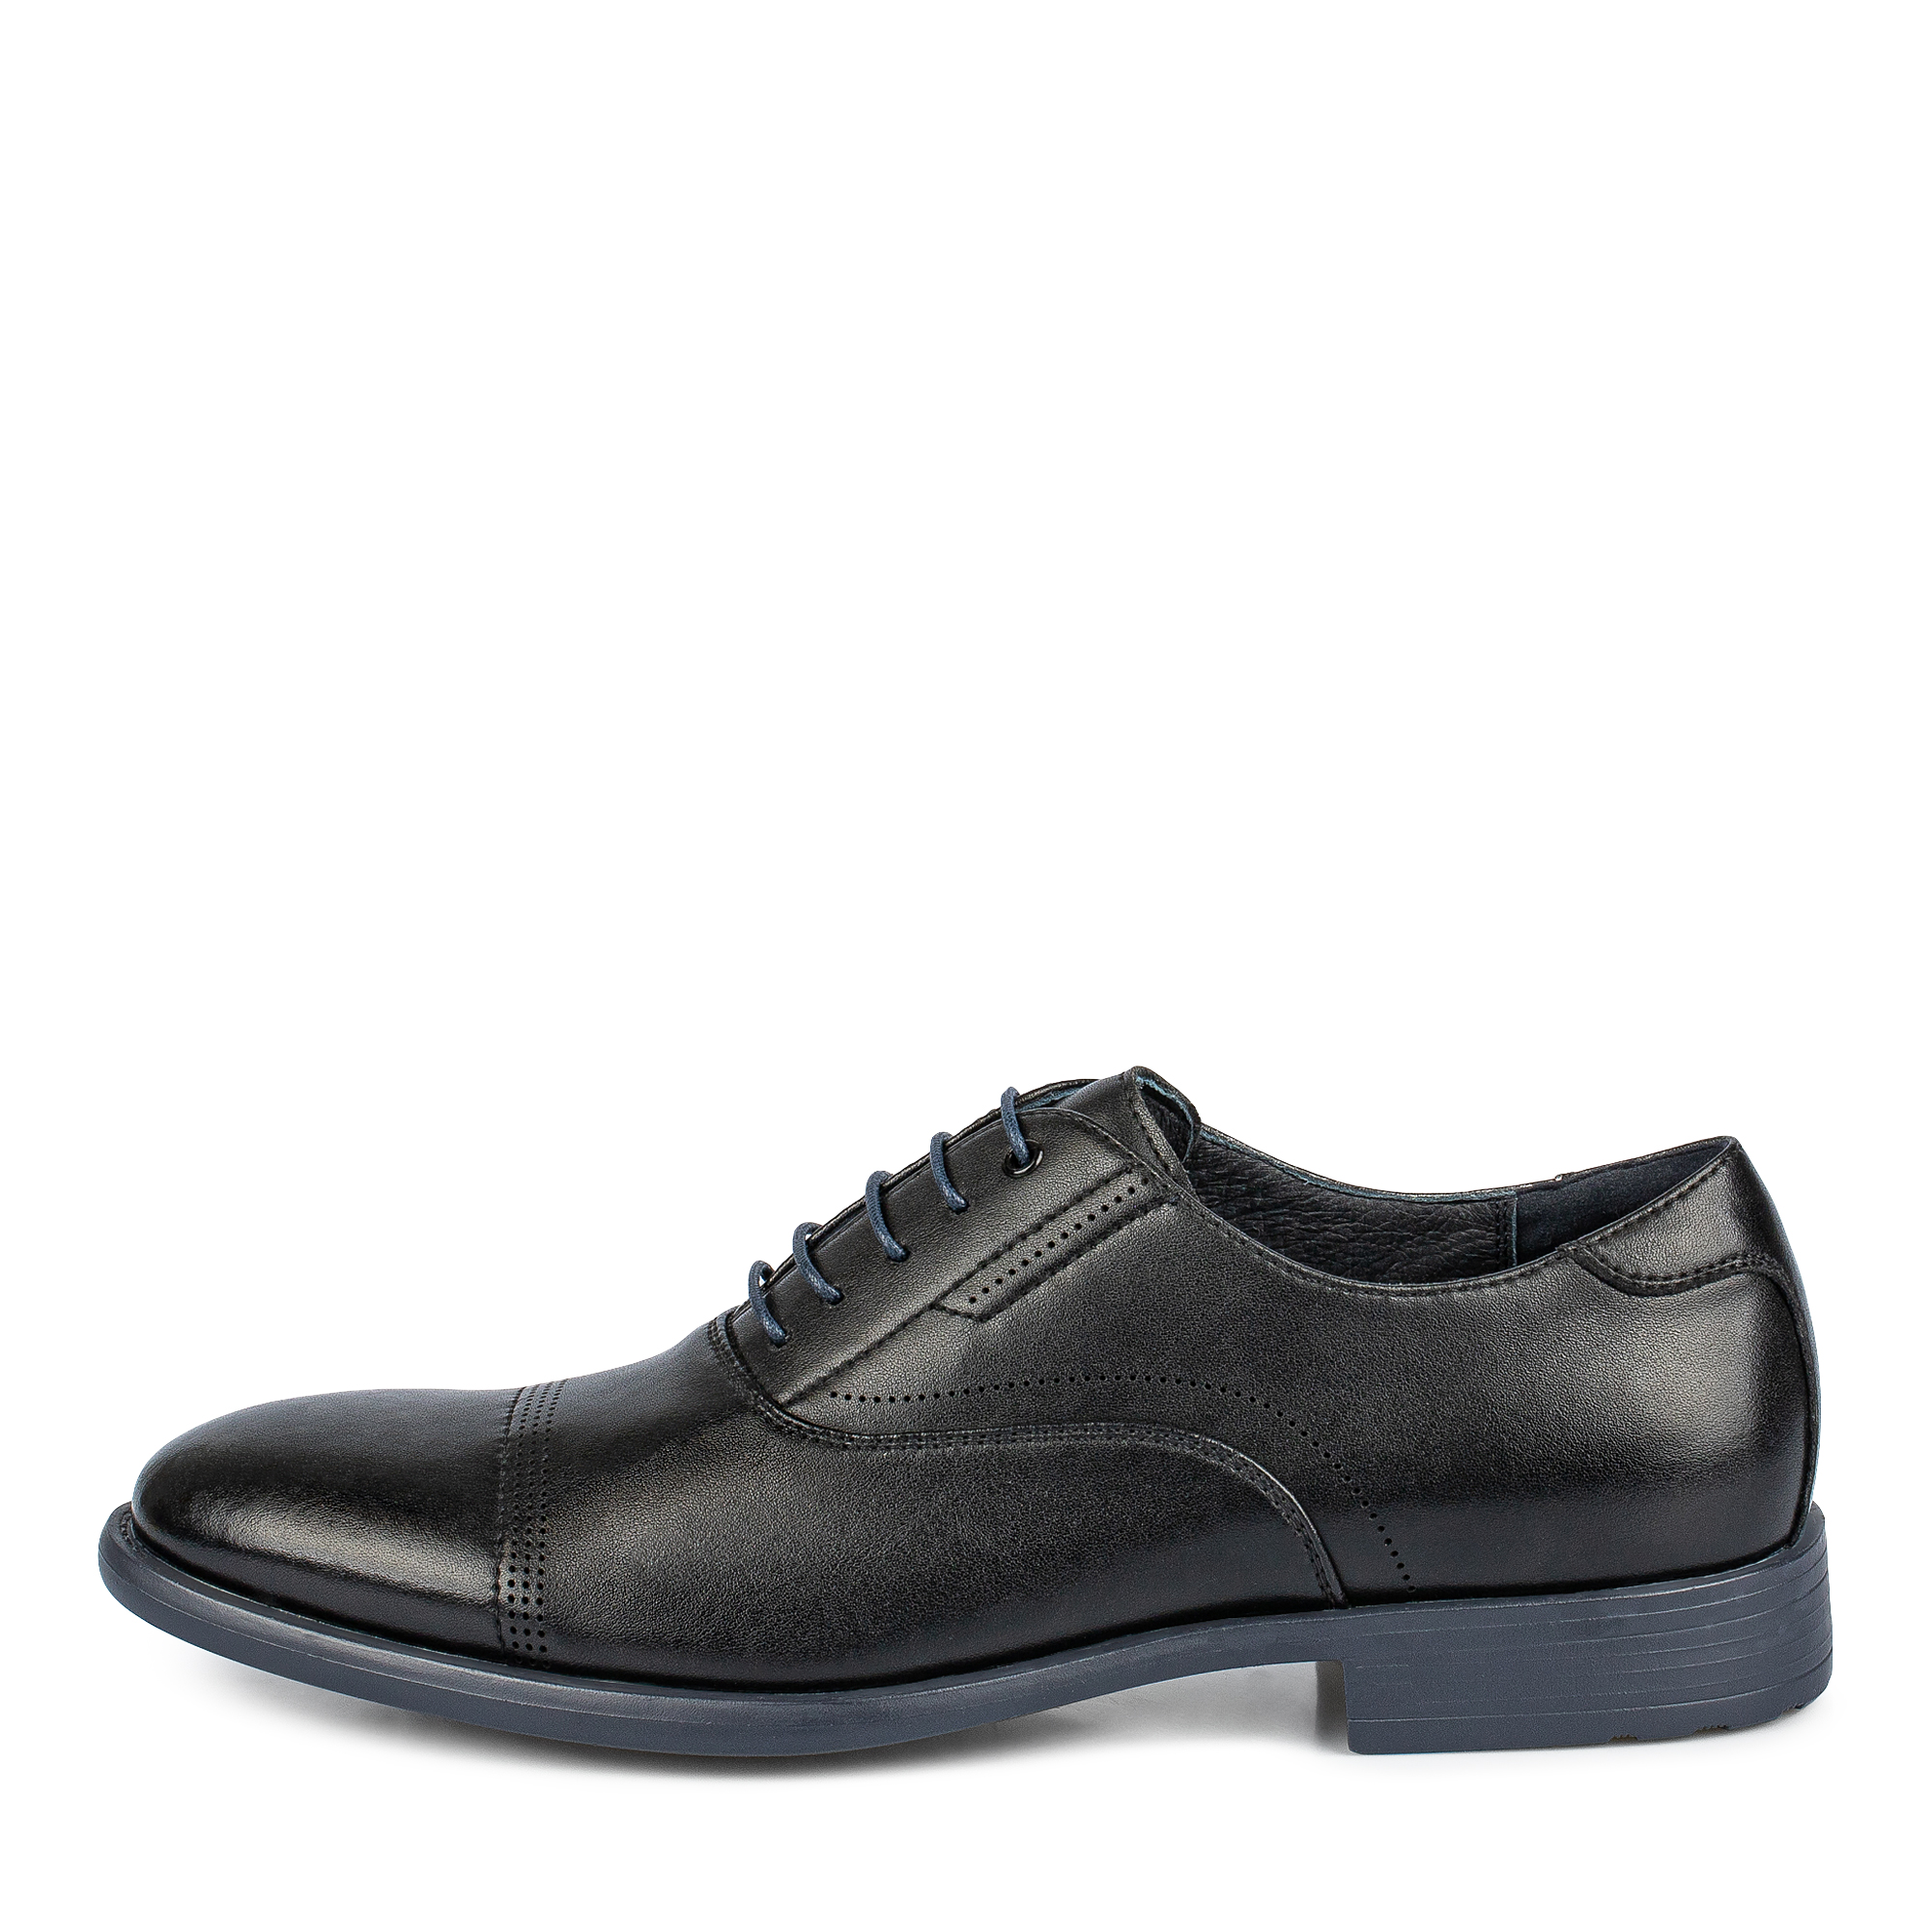 Туфли/полуботинки Thomas Munz 104-642A-1602, цвет черный, размер 41